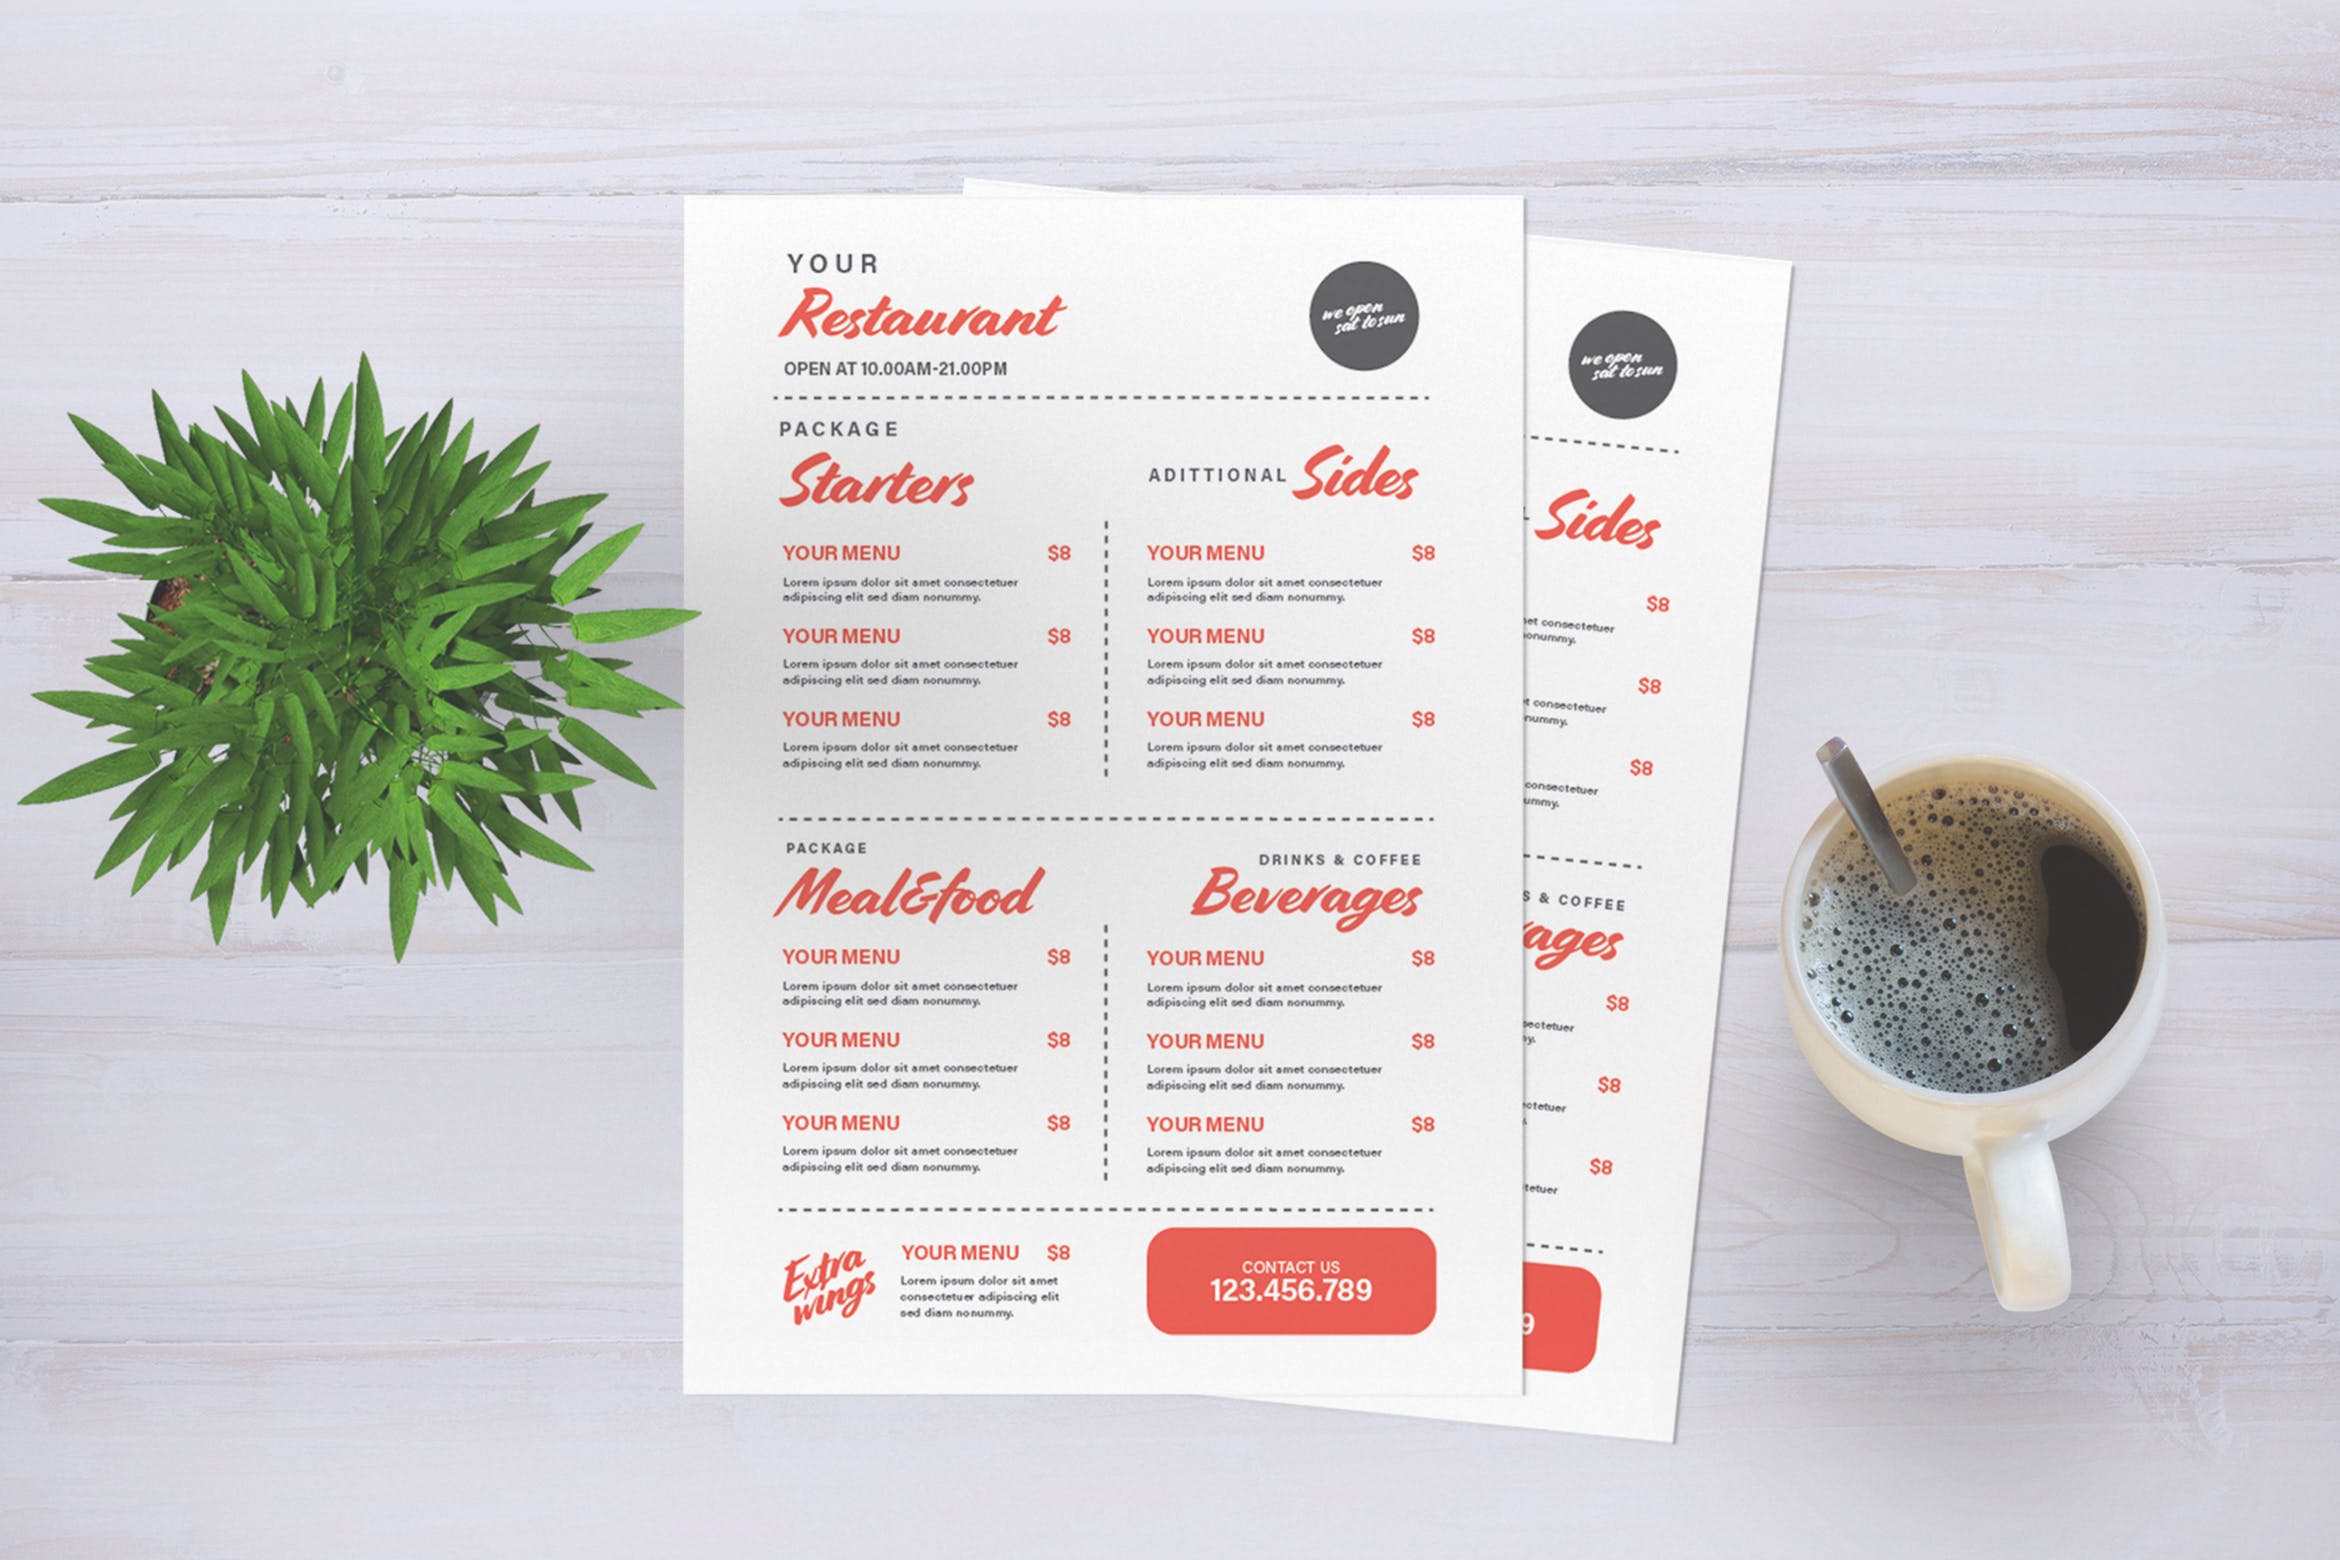 西式餐厅菜单版式设计模板素材 Restaurant Menu插图